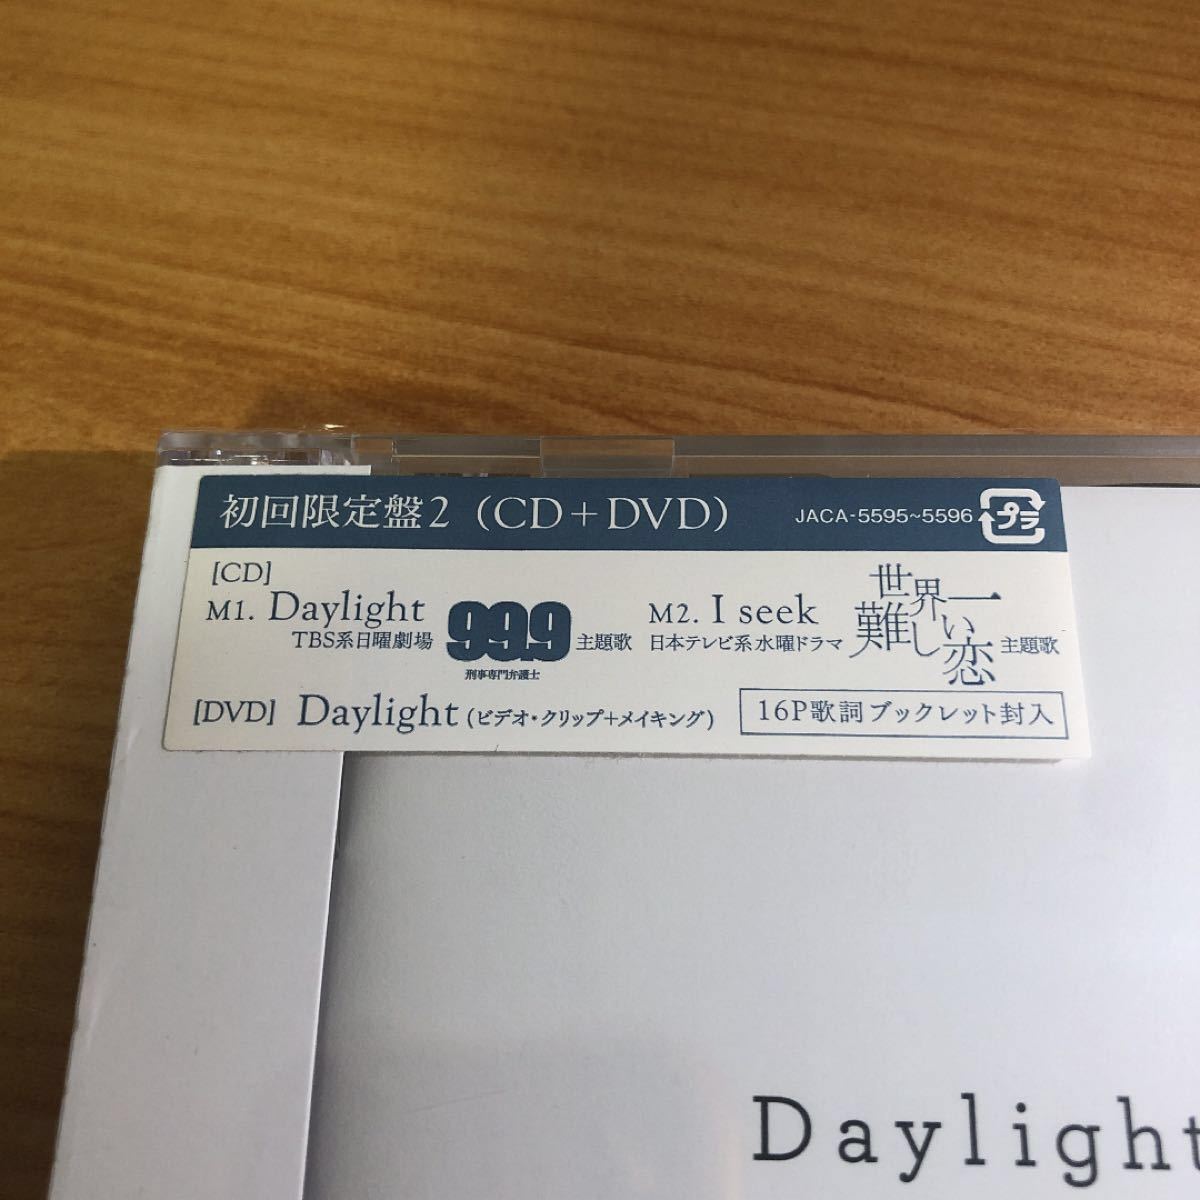 【新品未開封】Daylight/I seek 初回限定盤2 DVD付き/嵐ARASHI